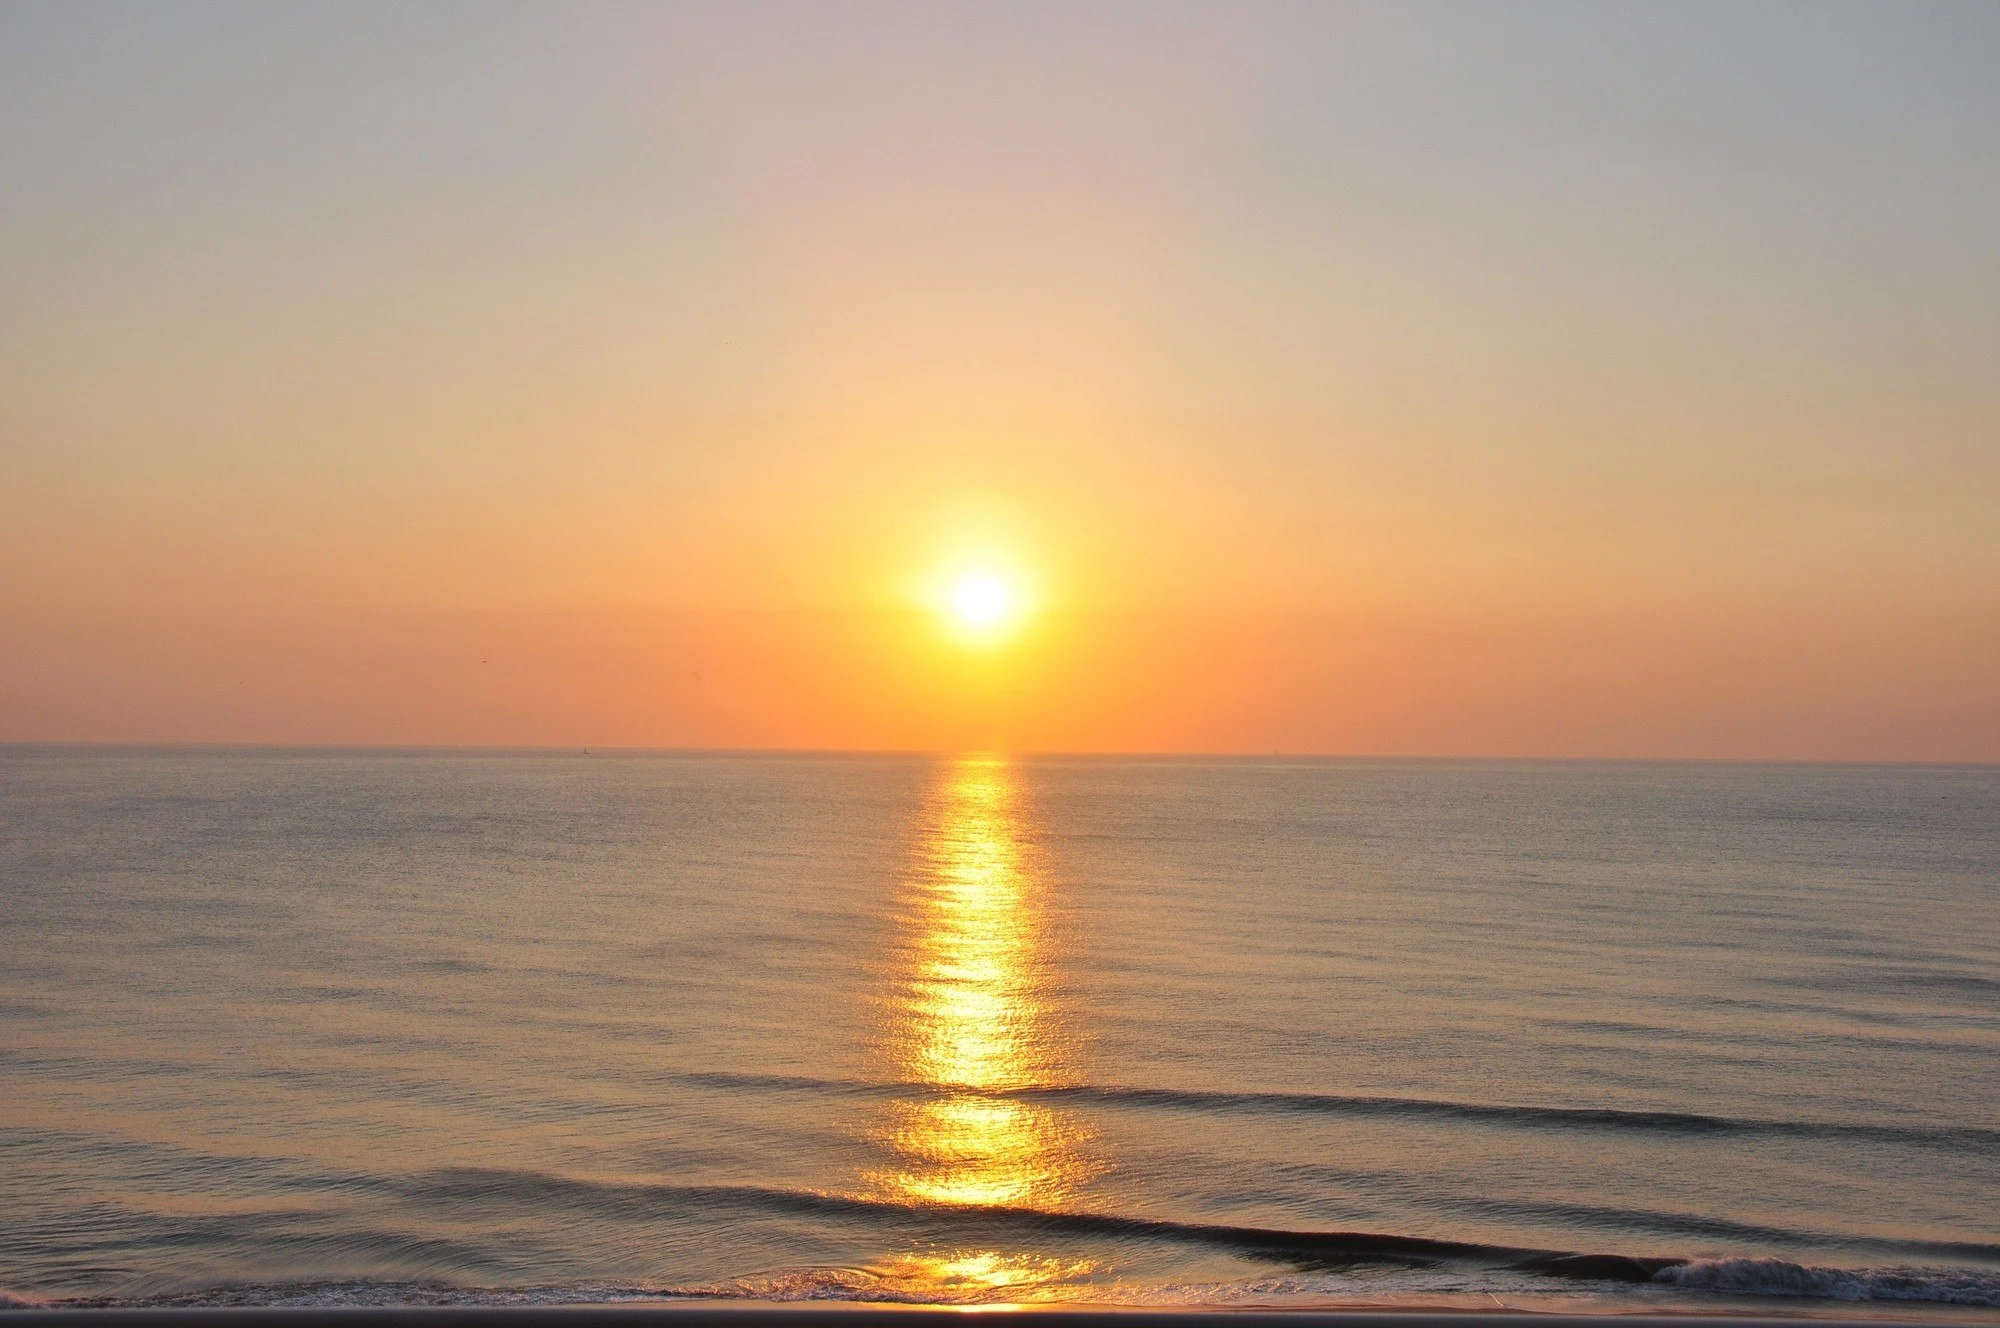 Virginia Beach Sunset